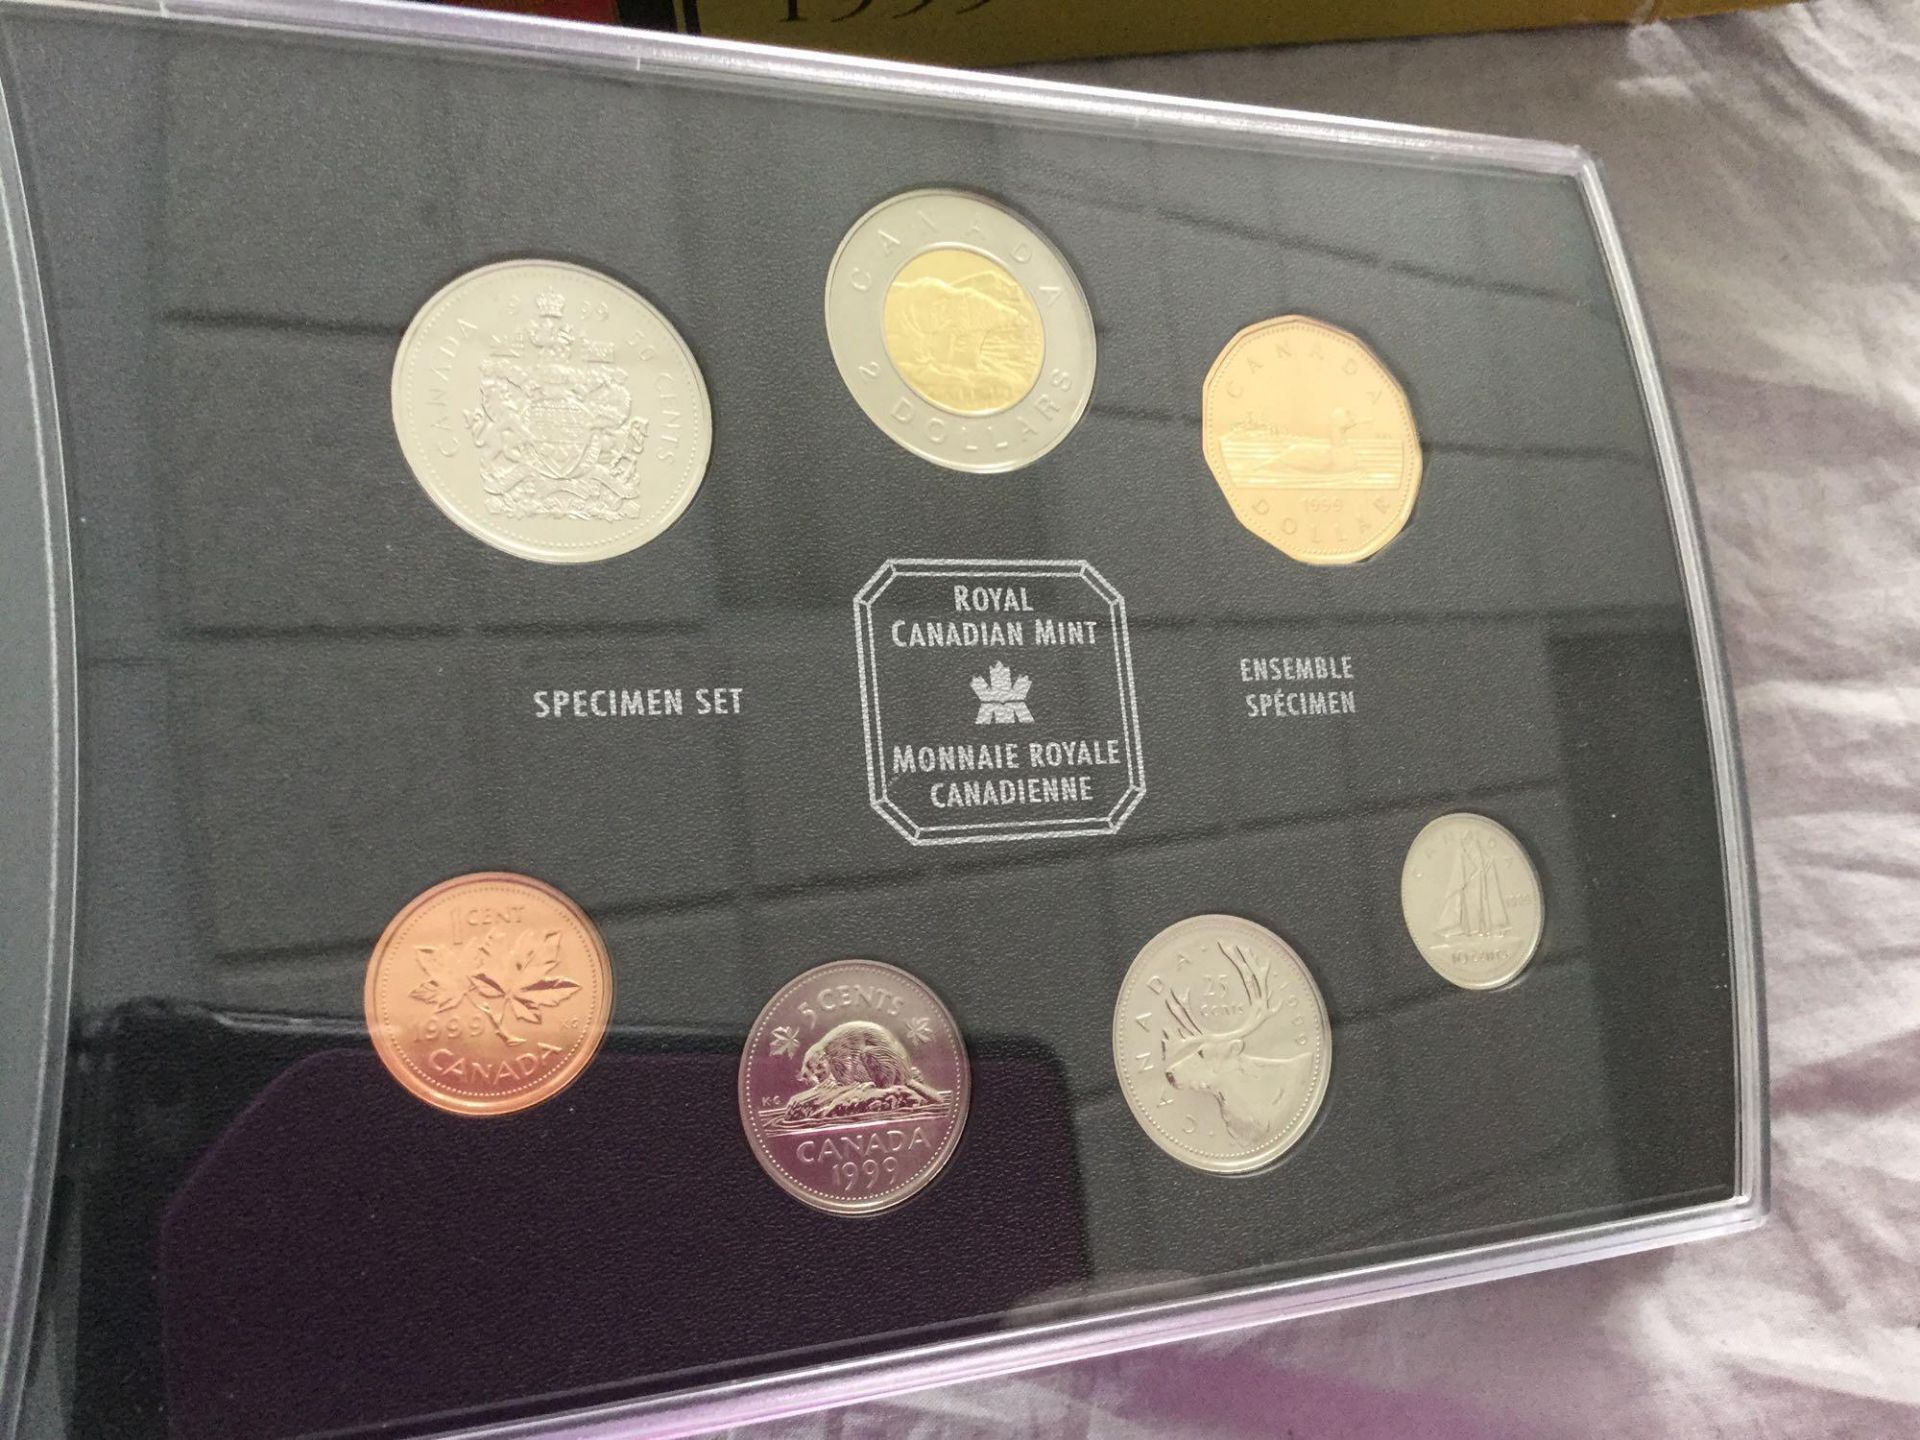 1999 Royal Canadian Mint Specimen Set - Image 2 of 3